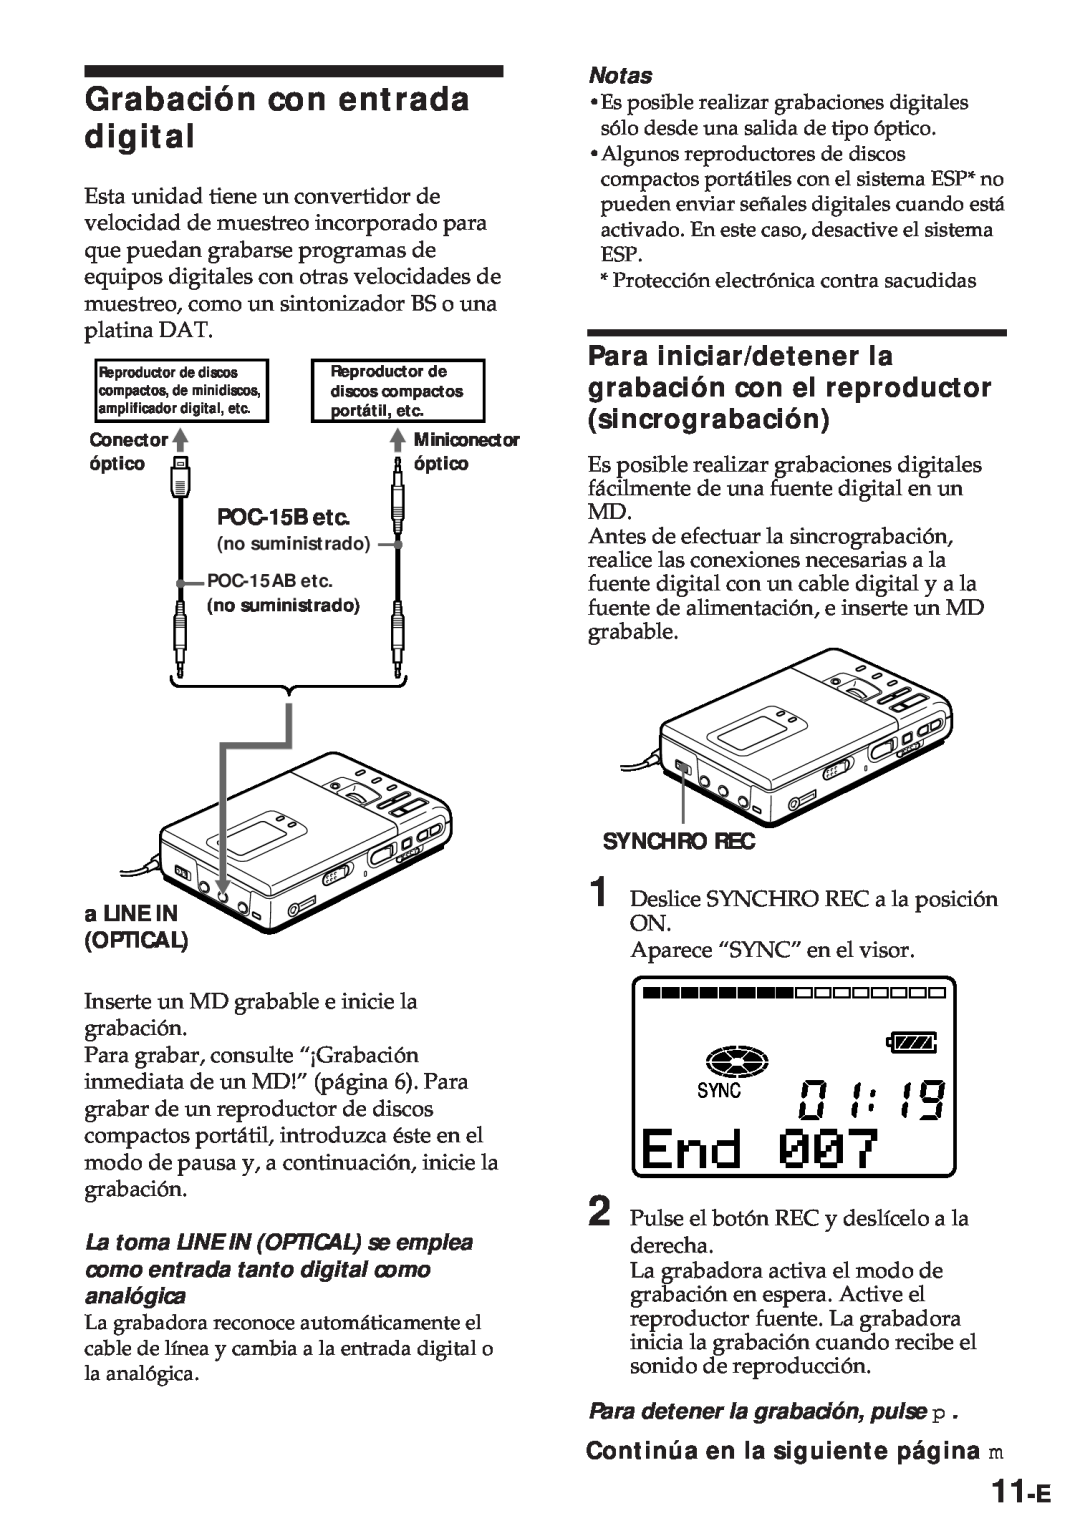 Sony MZ-R30 Grabación con entrada digital, 11-E, Para iniciar/detener la grabación con el reproductor sincrograbación 